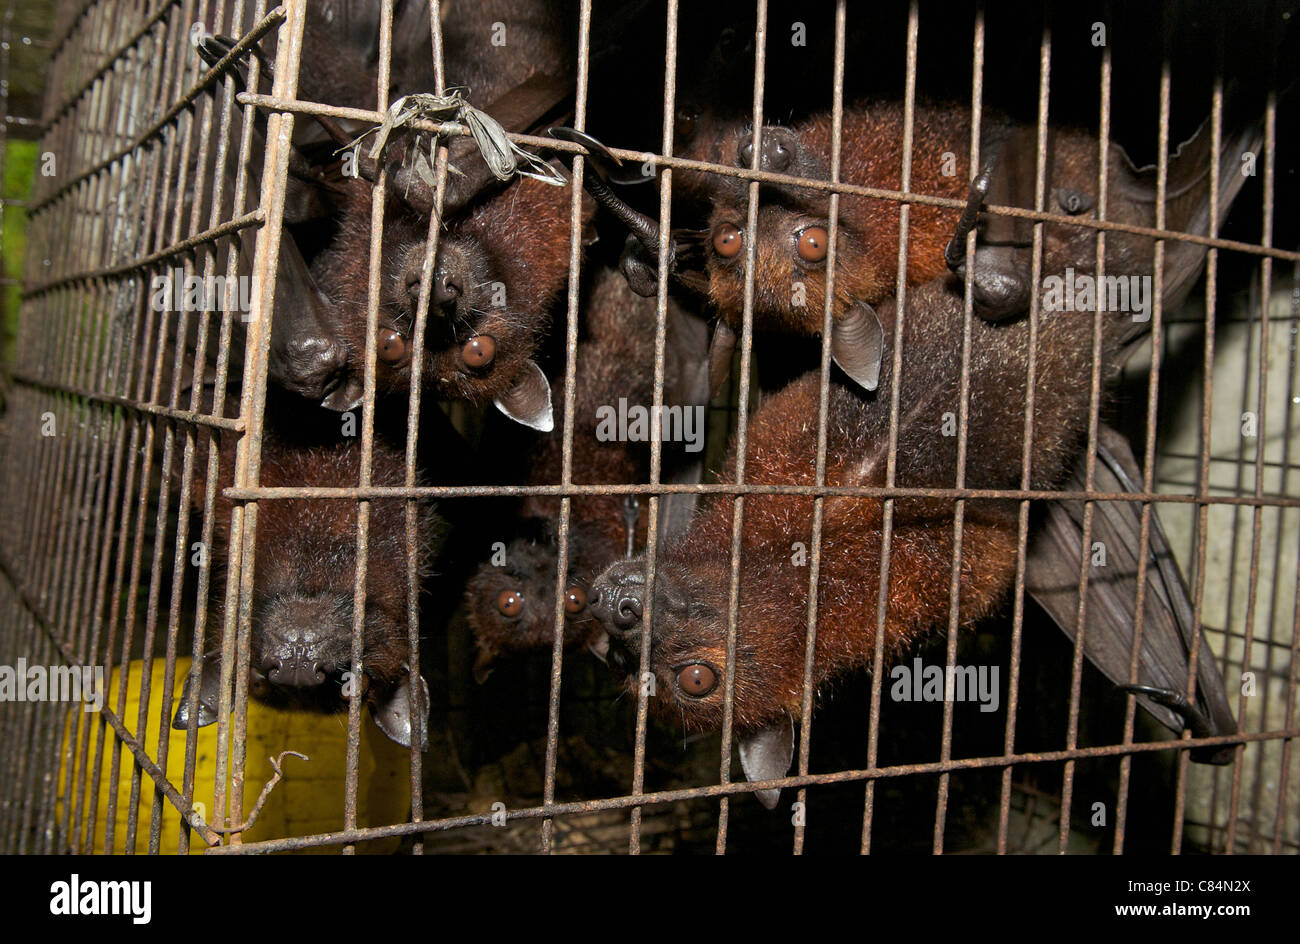 Chauves-souris à fruits à vendre au stalle de bord de la route, faisant partie du commerce de la viande de brousse, avec risque de croisement de maladies humaines et animales. Banque D'Images